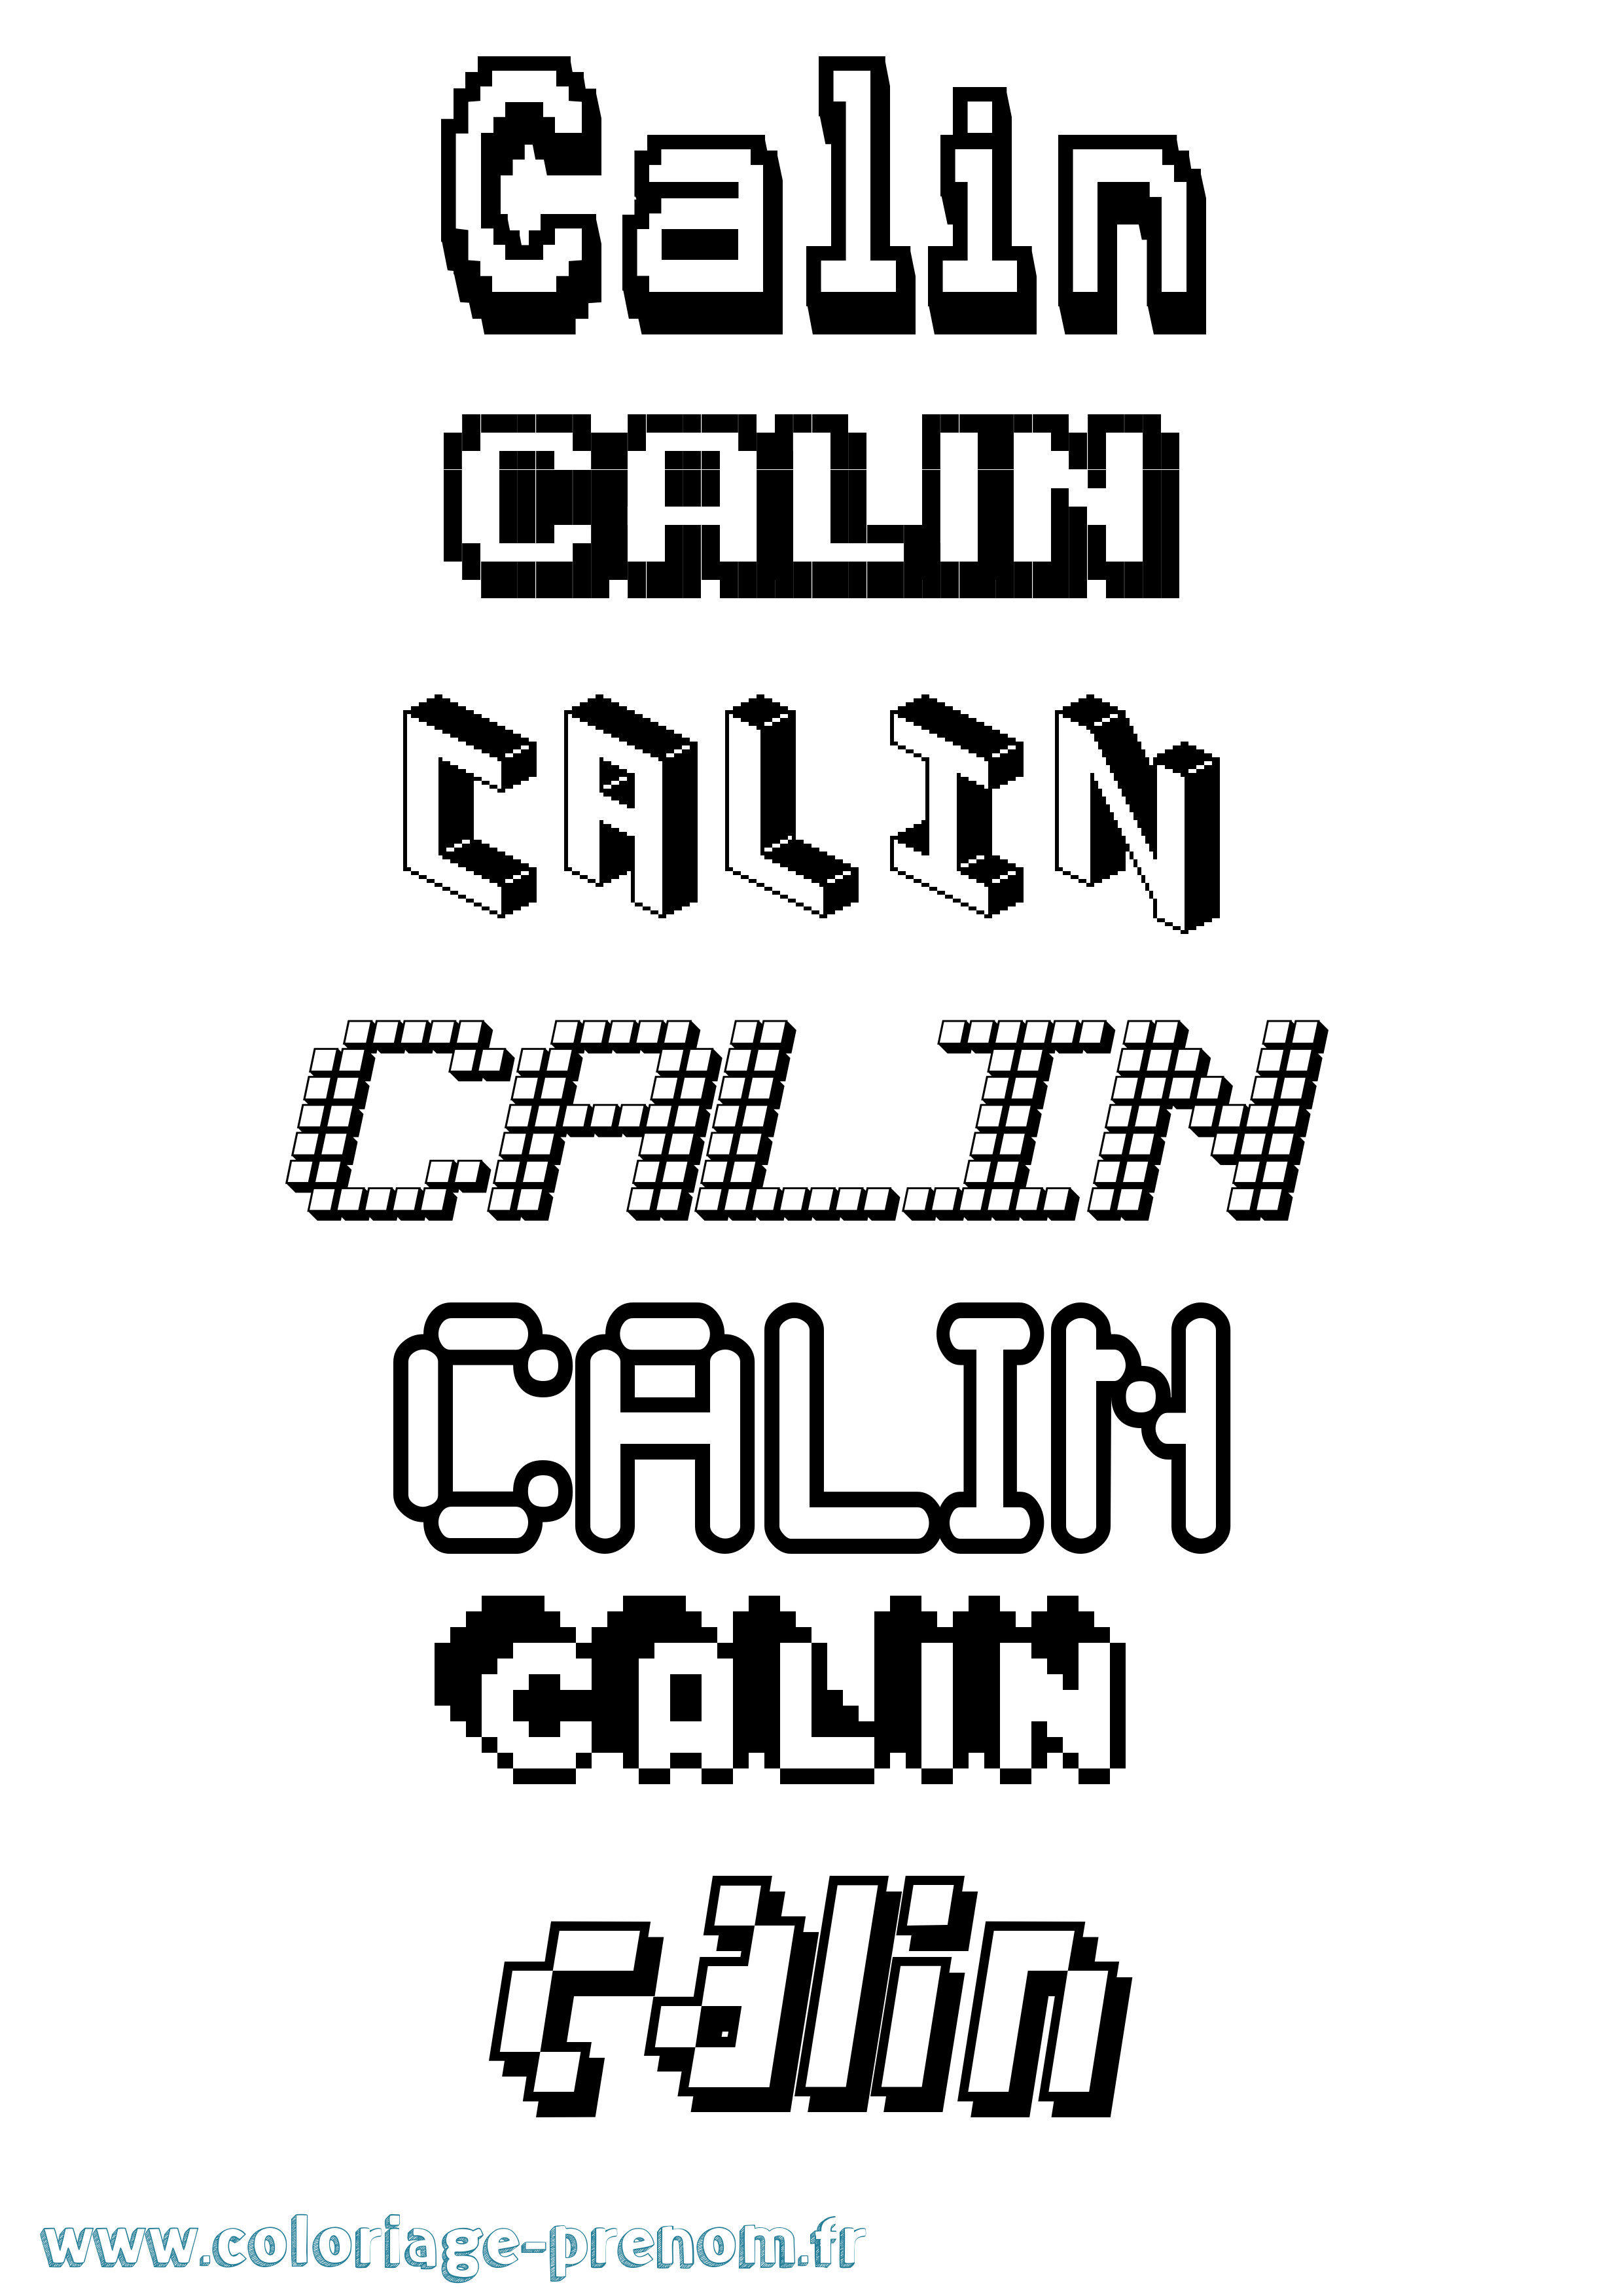 Coloriage prénom Calin Pixel